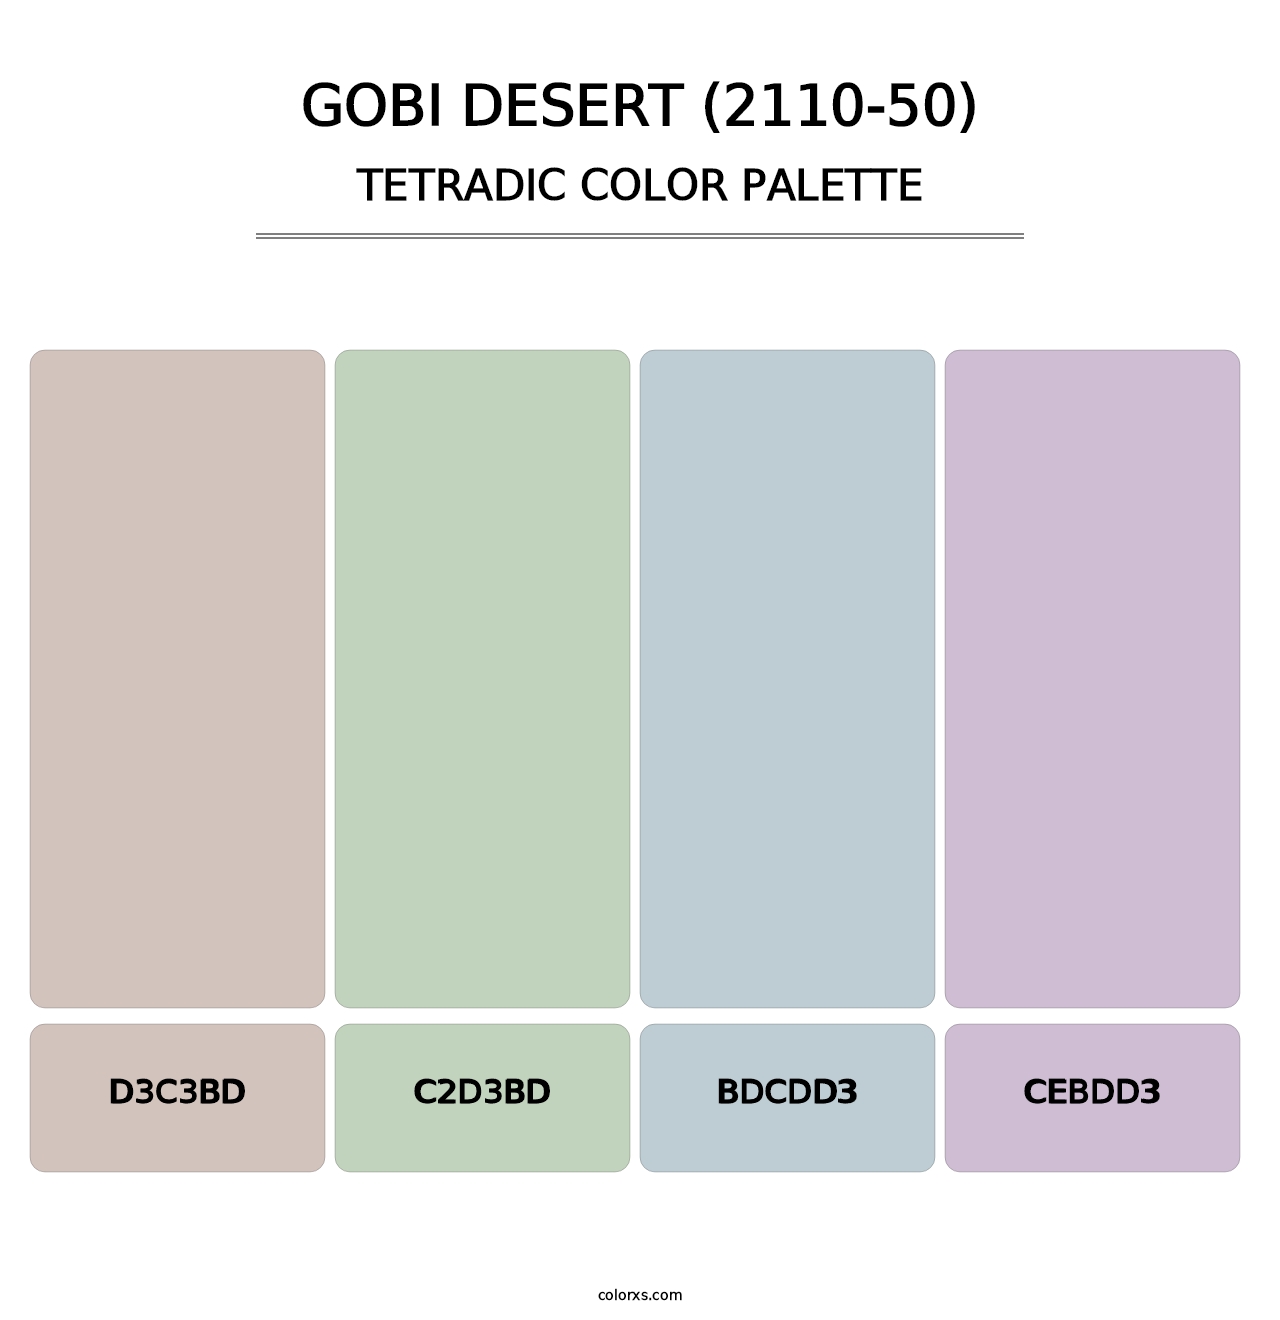 Gobi Desert (2110-50) - Tetradic Color Palette